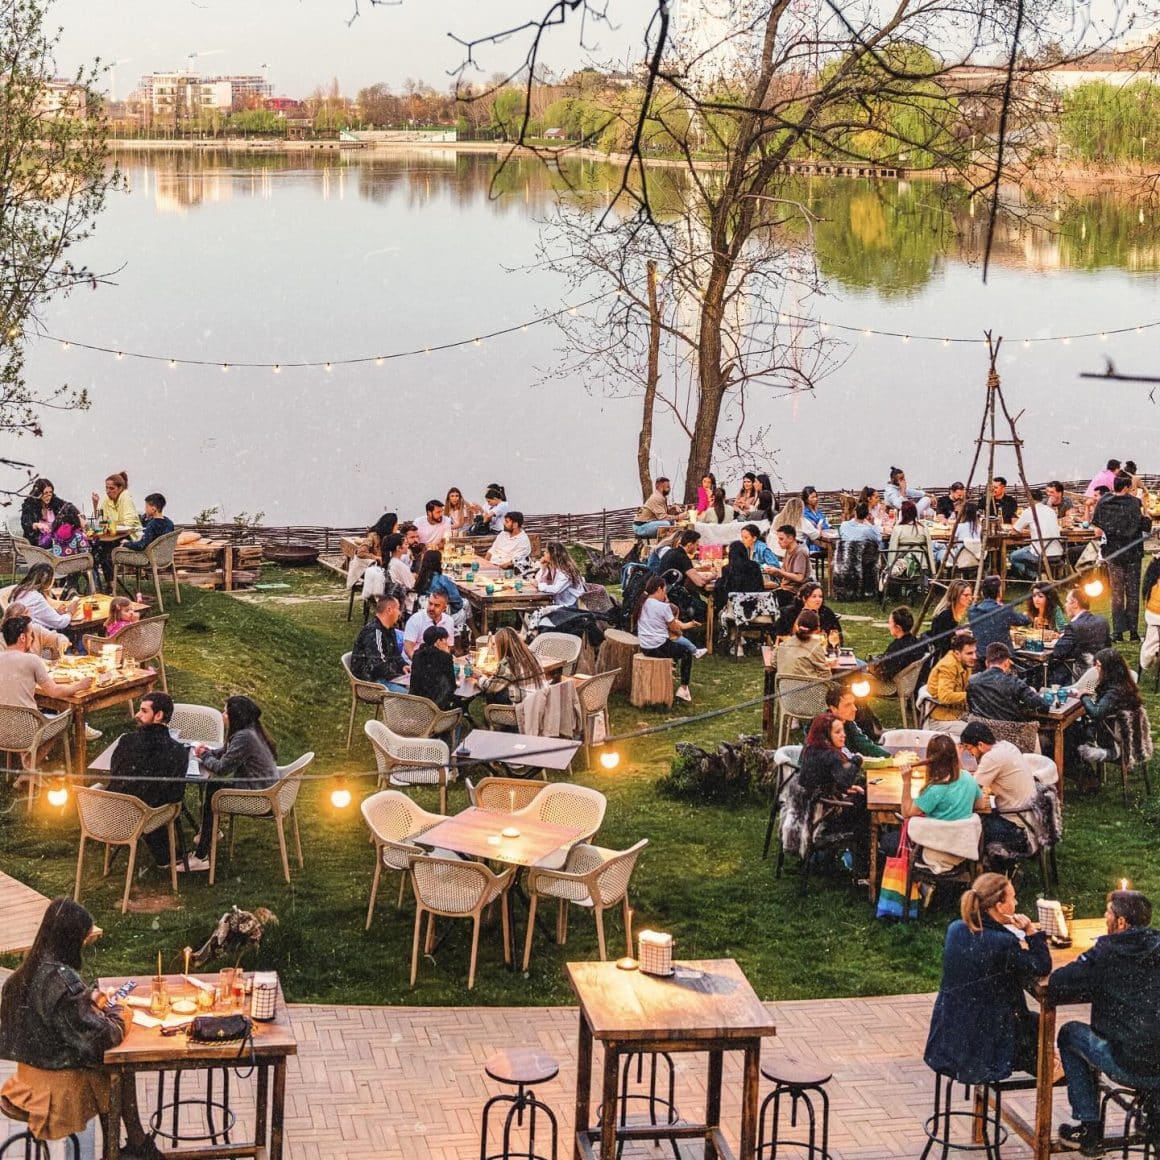 Terase București: terasa mare de la Indigen, asezata pe maulul Lacului Tei, cu multi oameni asezati la mese, pe iarba